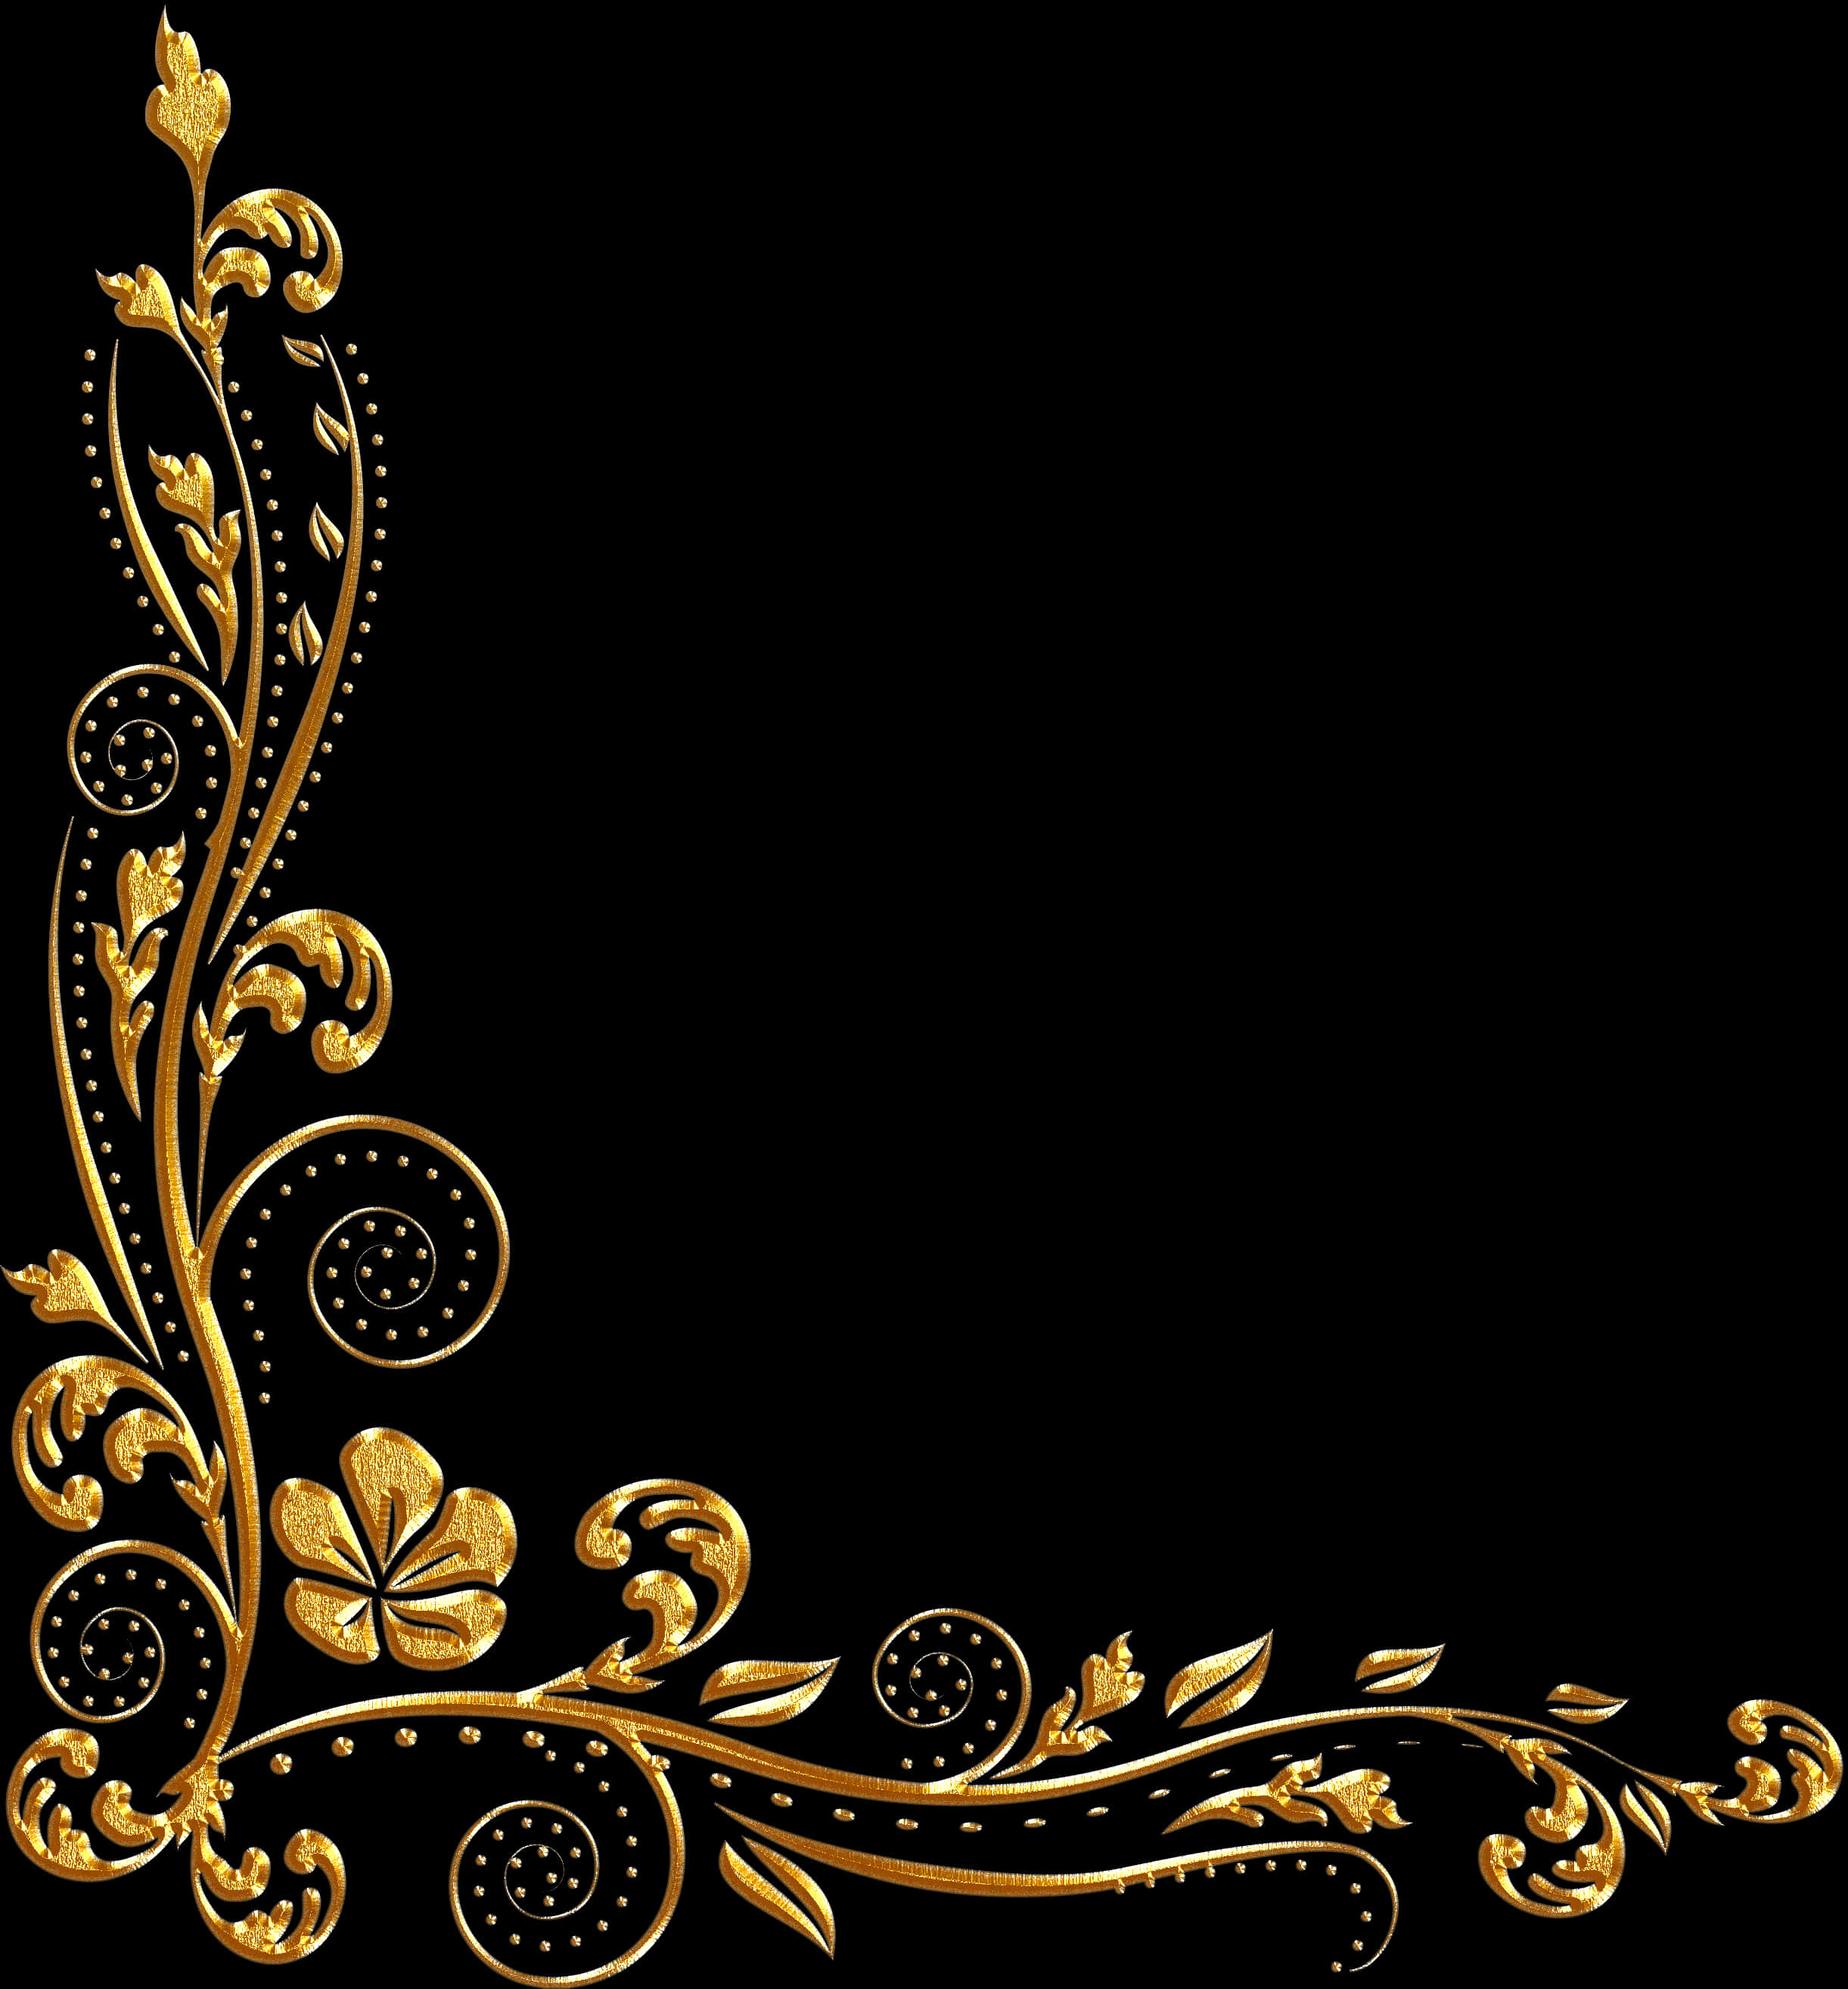 A Gold Floral Design On A Black Background